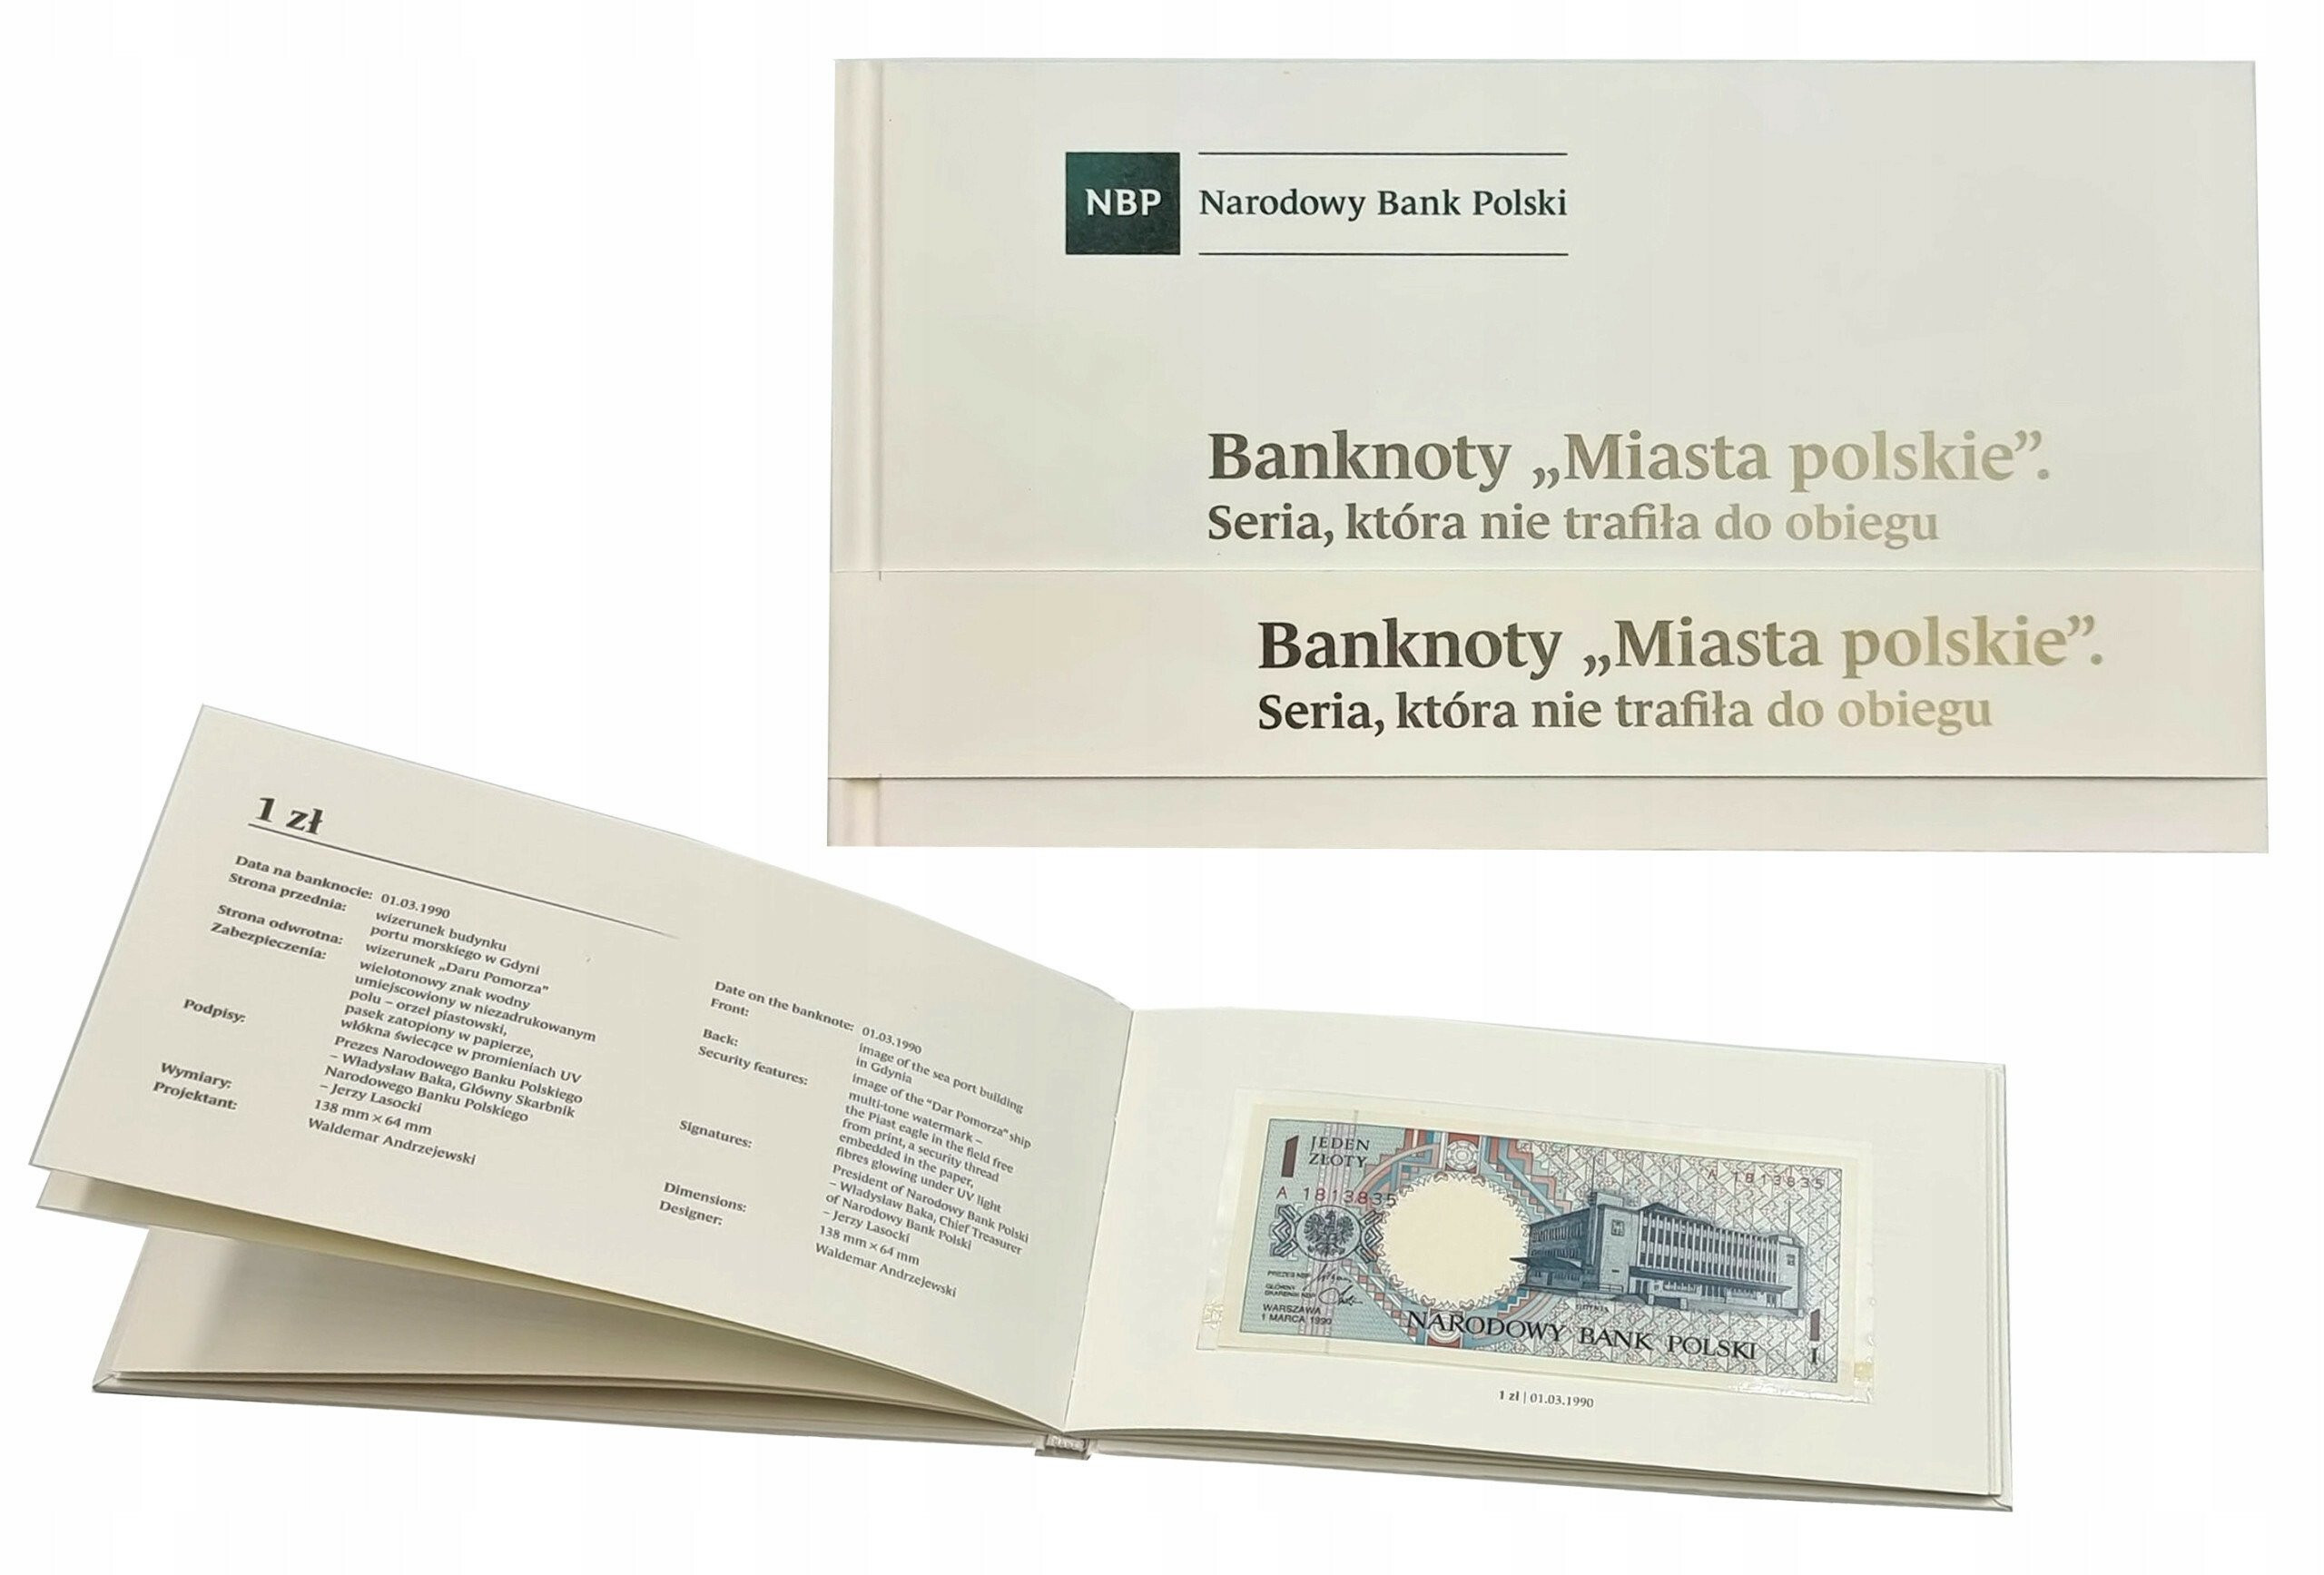 Miasta Polskie 1990 komplet banknotów 1-500 złotych